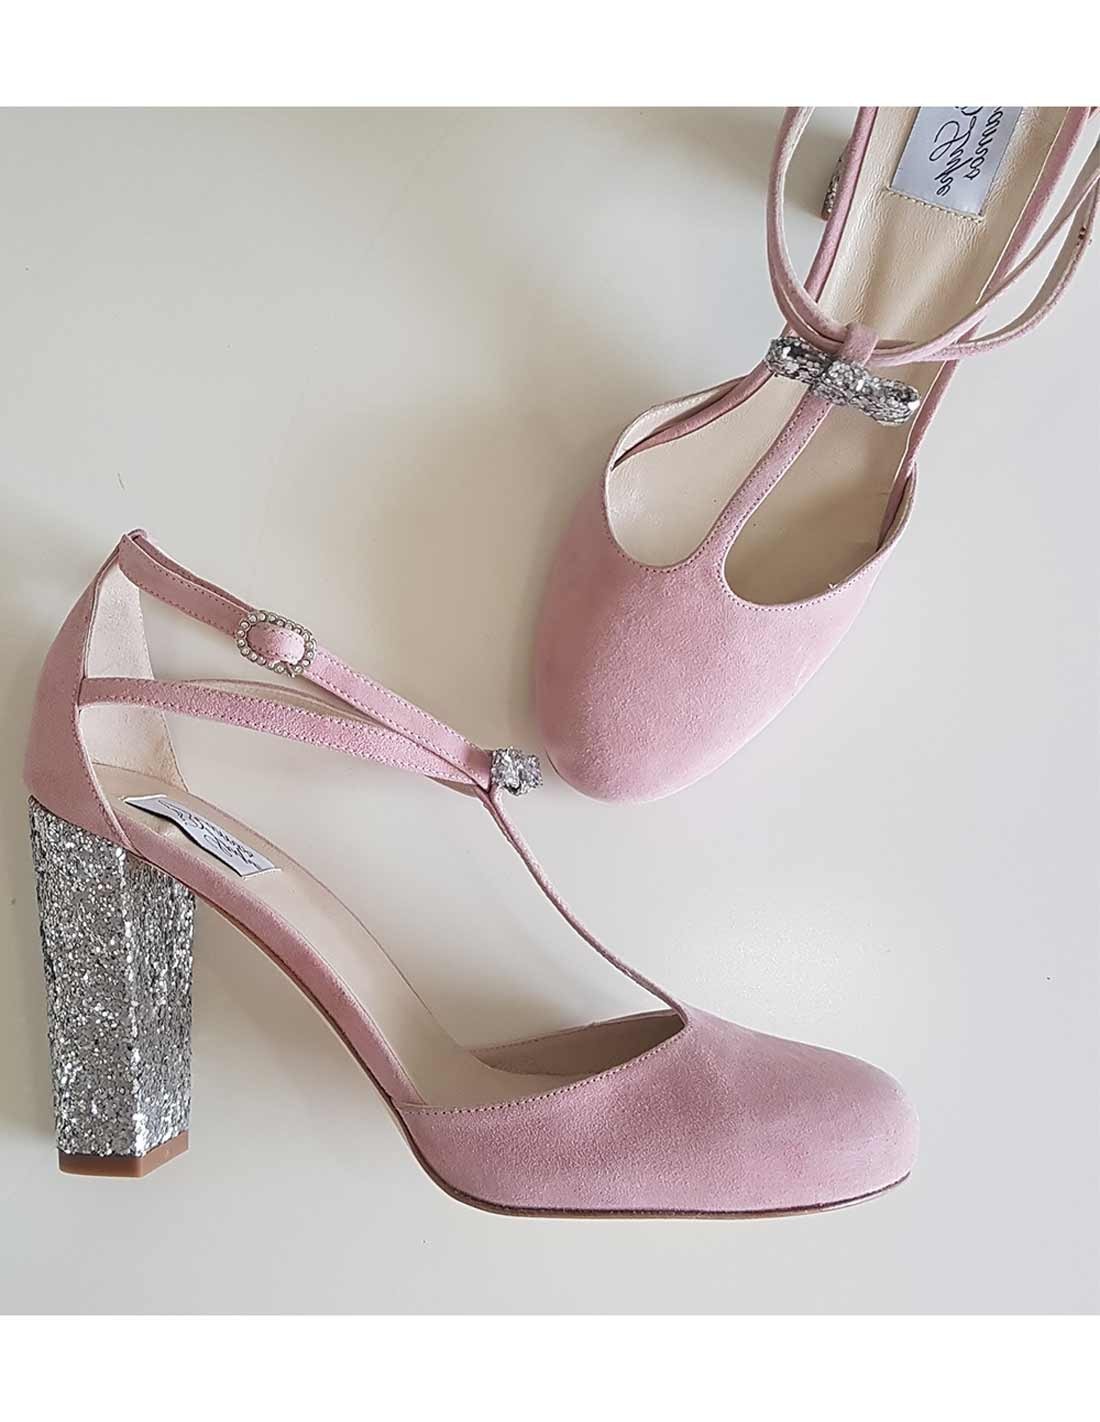 Él estas Cercanamente Zapatos de fiesta de ante rosa y tacón plata | INVITADISIMA